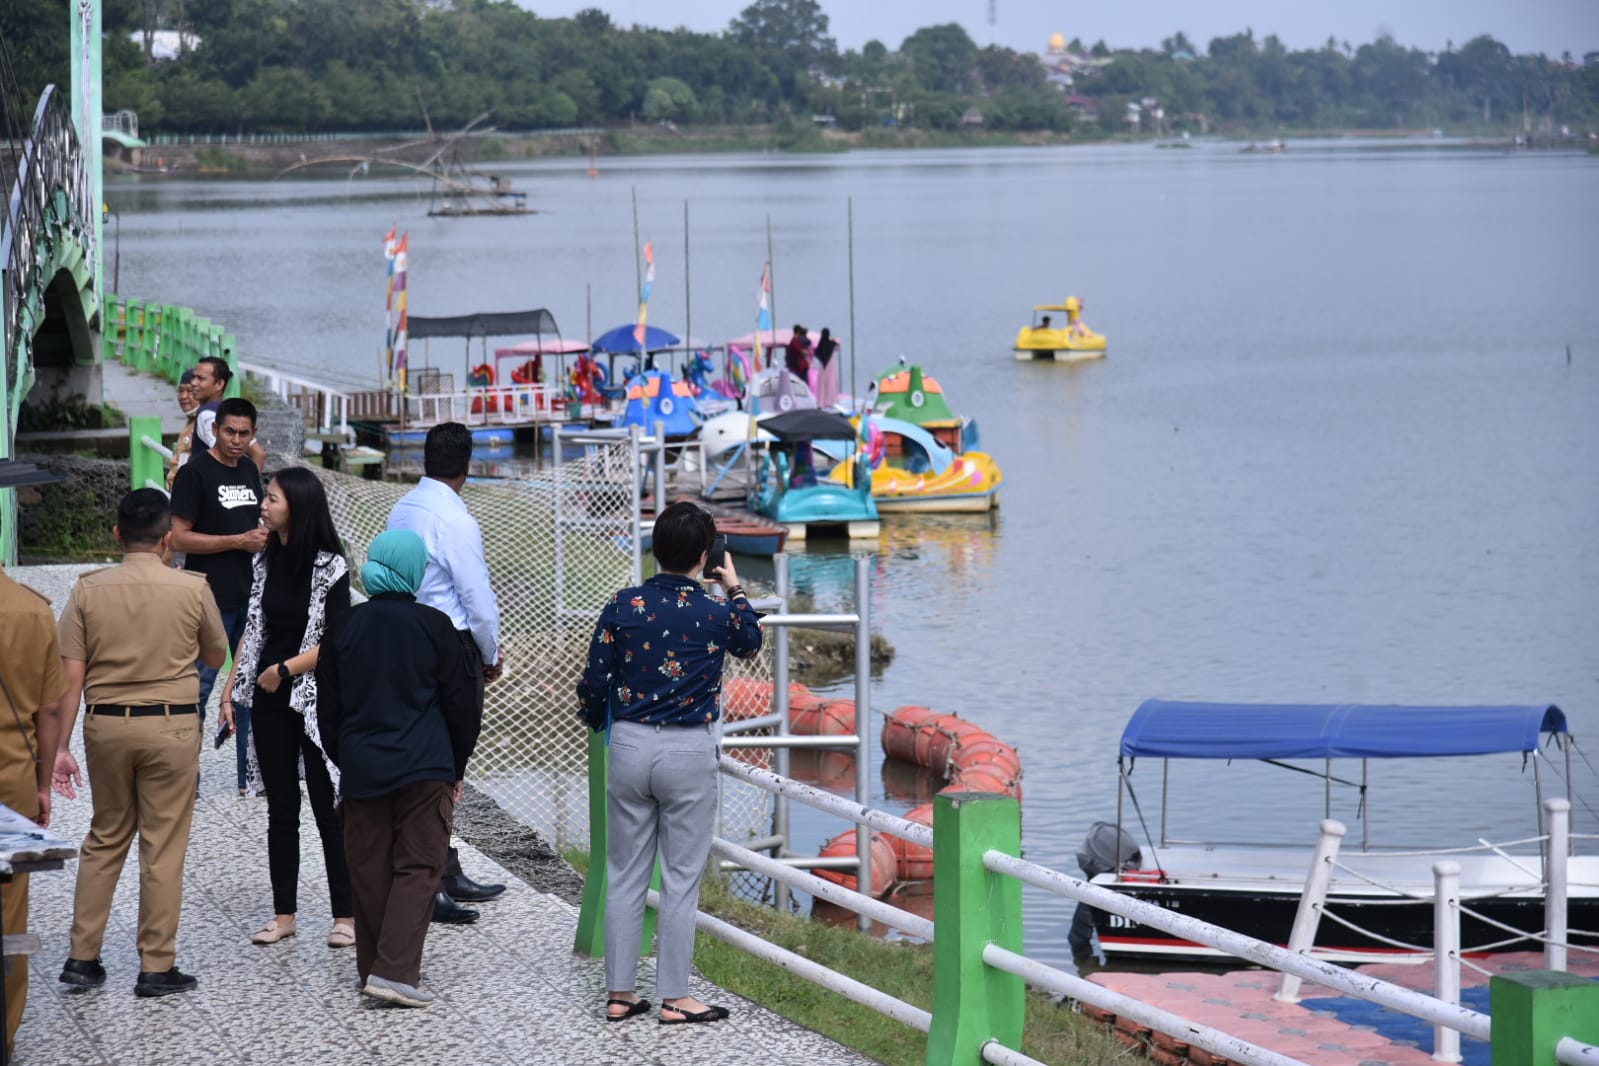 Kota Jambi Kandidat Penerima Bantuan Rp 108 Miliar, Tim TFURF Singapura Mulai Survey ke Danau Sipin   